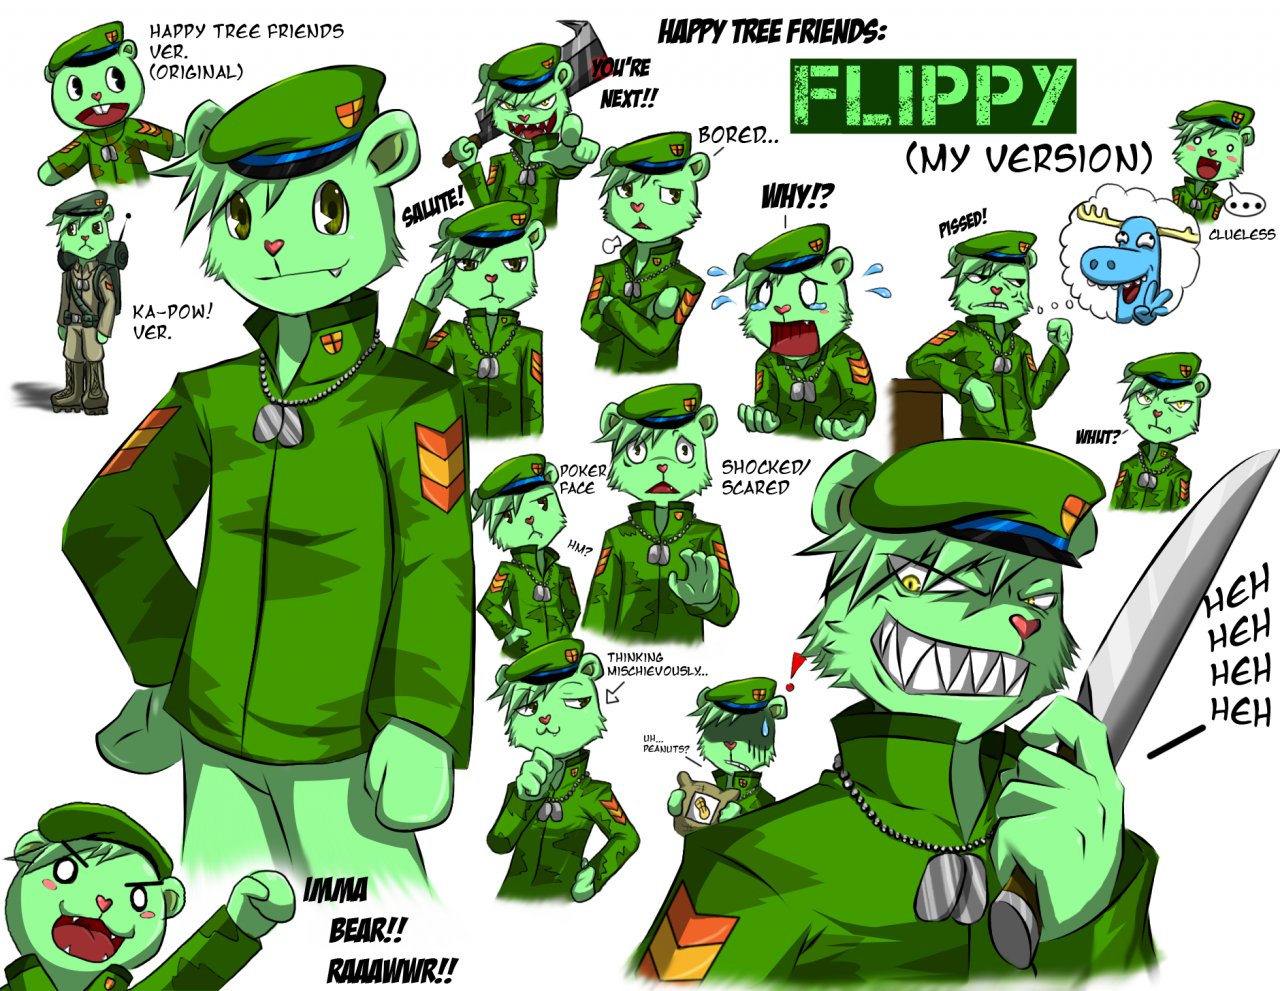 Flippy-Flaky-and-Splendid-anime-happy-tree-friends-2552177… | Flickr